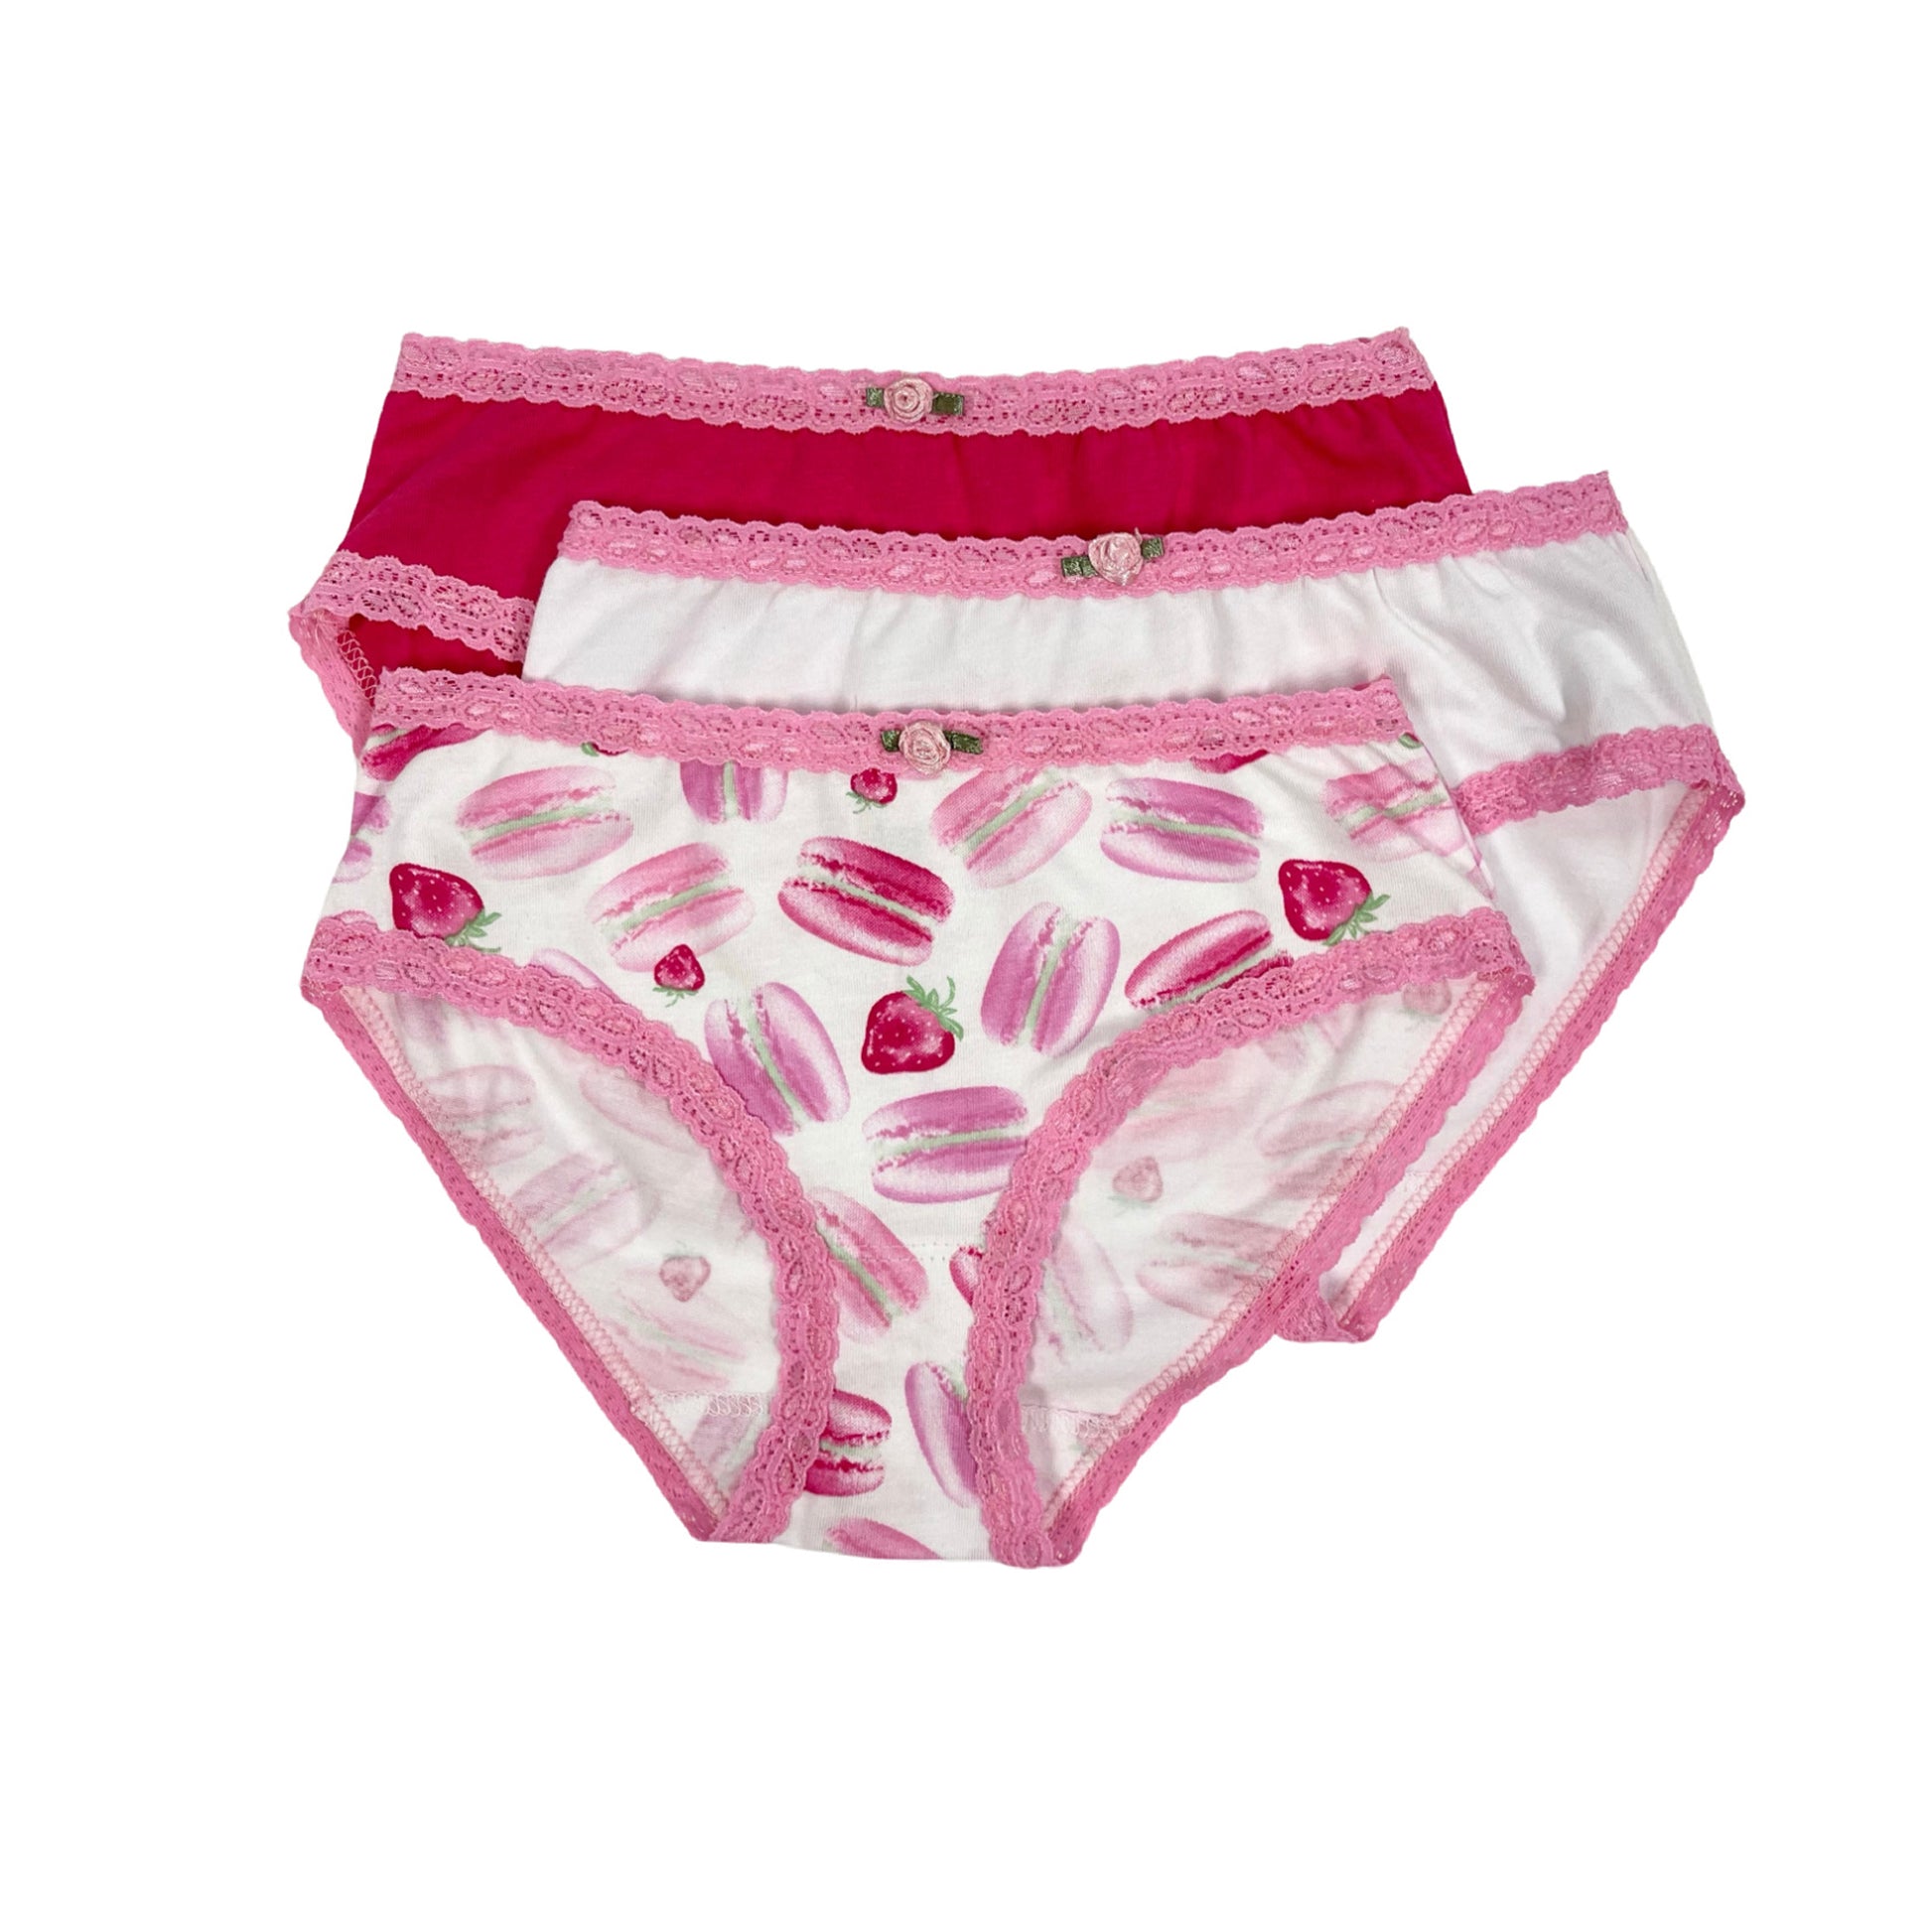 4 PACK KIDS Girls Underwear Child Cartoon Cute Lace Cotton Briefs